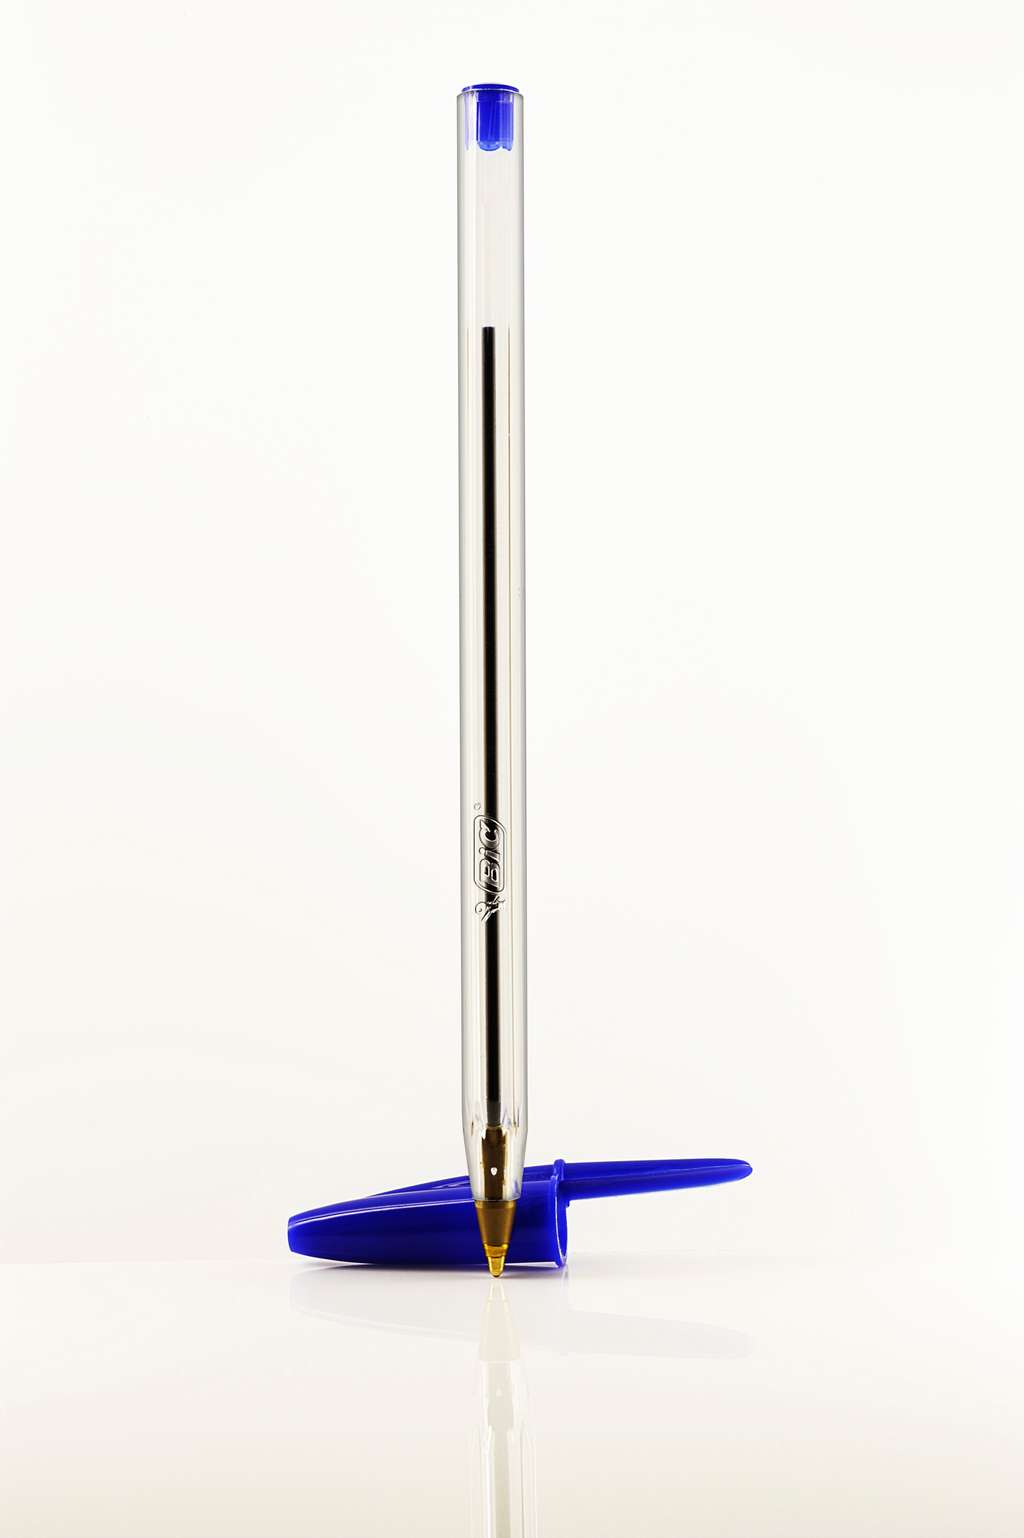 Le Bic Cristal, emblème de l’objet pas cher et design. © Bic